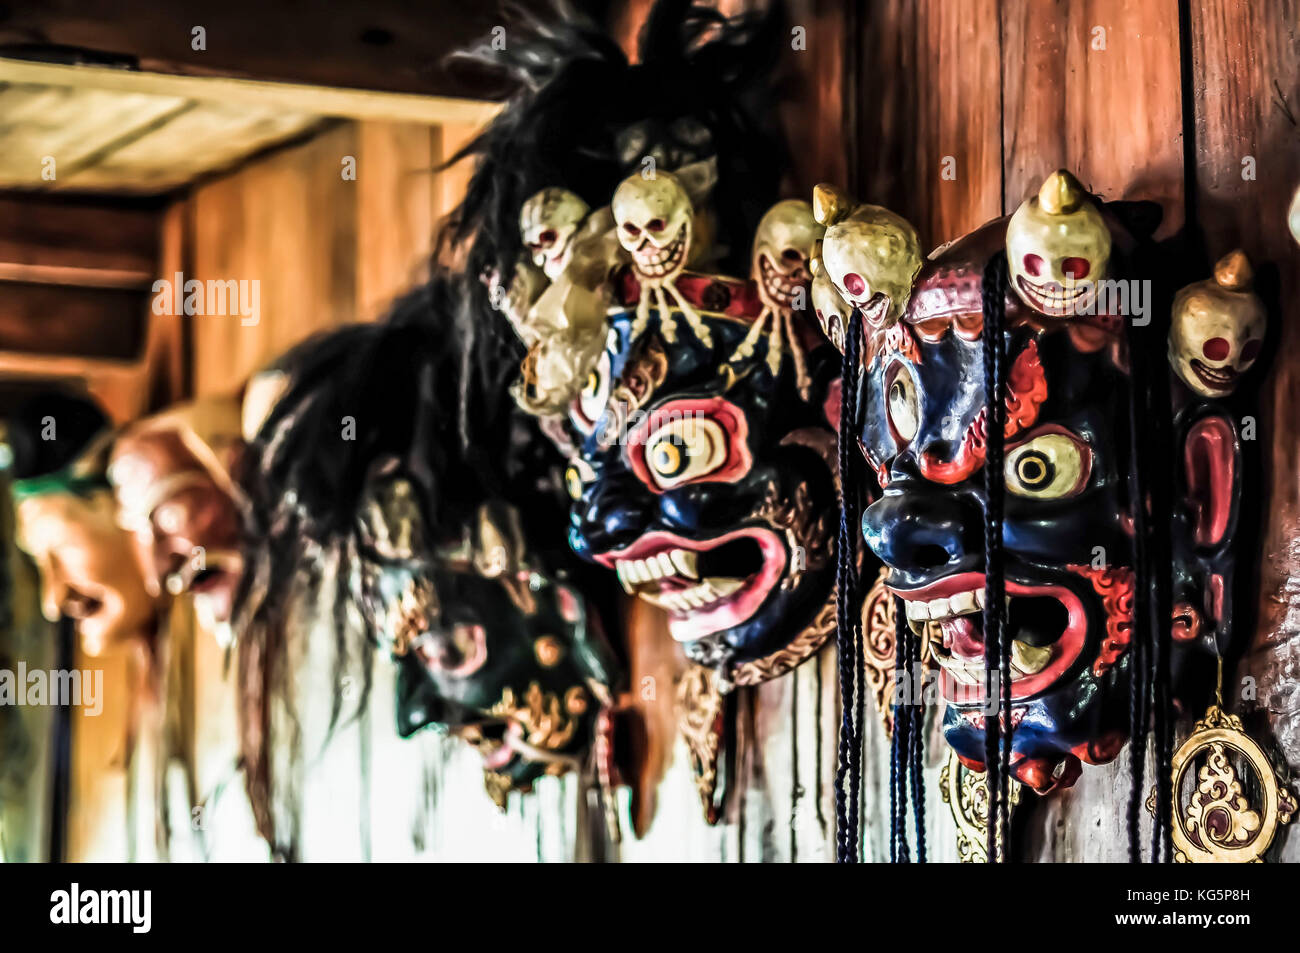 Le maschere che raffigura una divinità infuriate, distretto rasuwa, regione bagmati, Nepal, asia Foto Stock